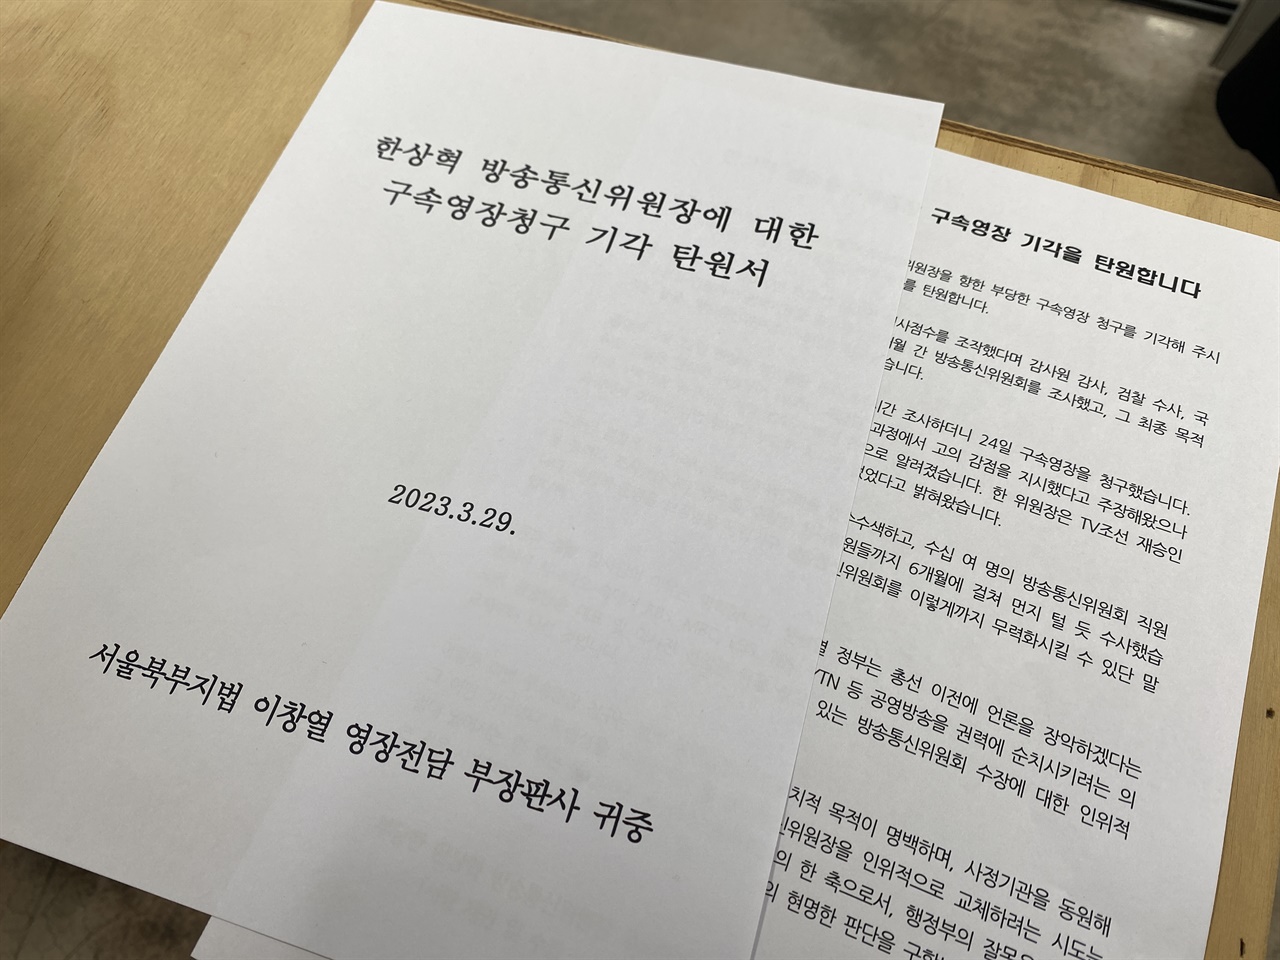 검찰의 방송통신위원장 구속영장 청구에 민주언론시민연합은 시민 5,618명이 연명한 구속반대 탄원서를 3월 29일 서울북부지방법원에 제출했다.